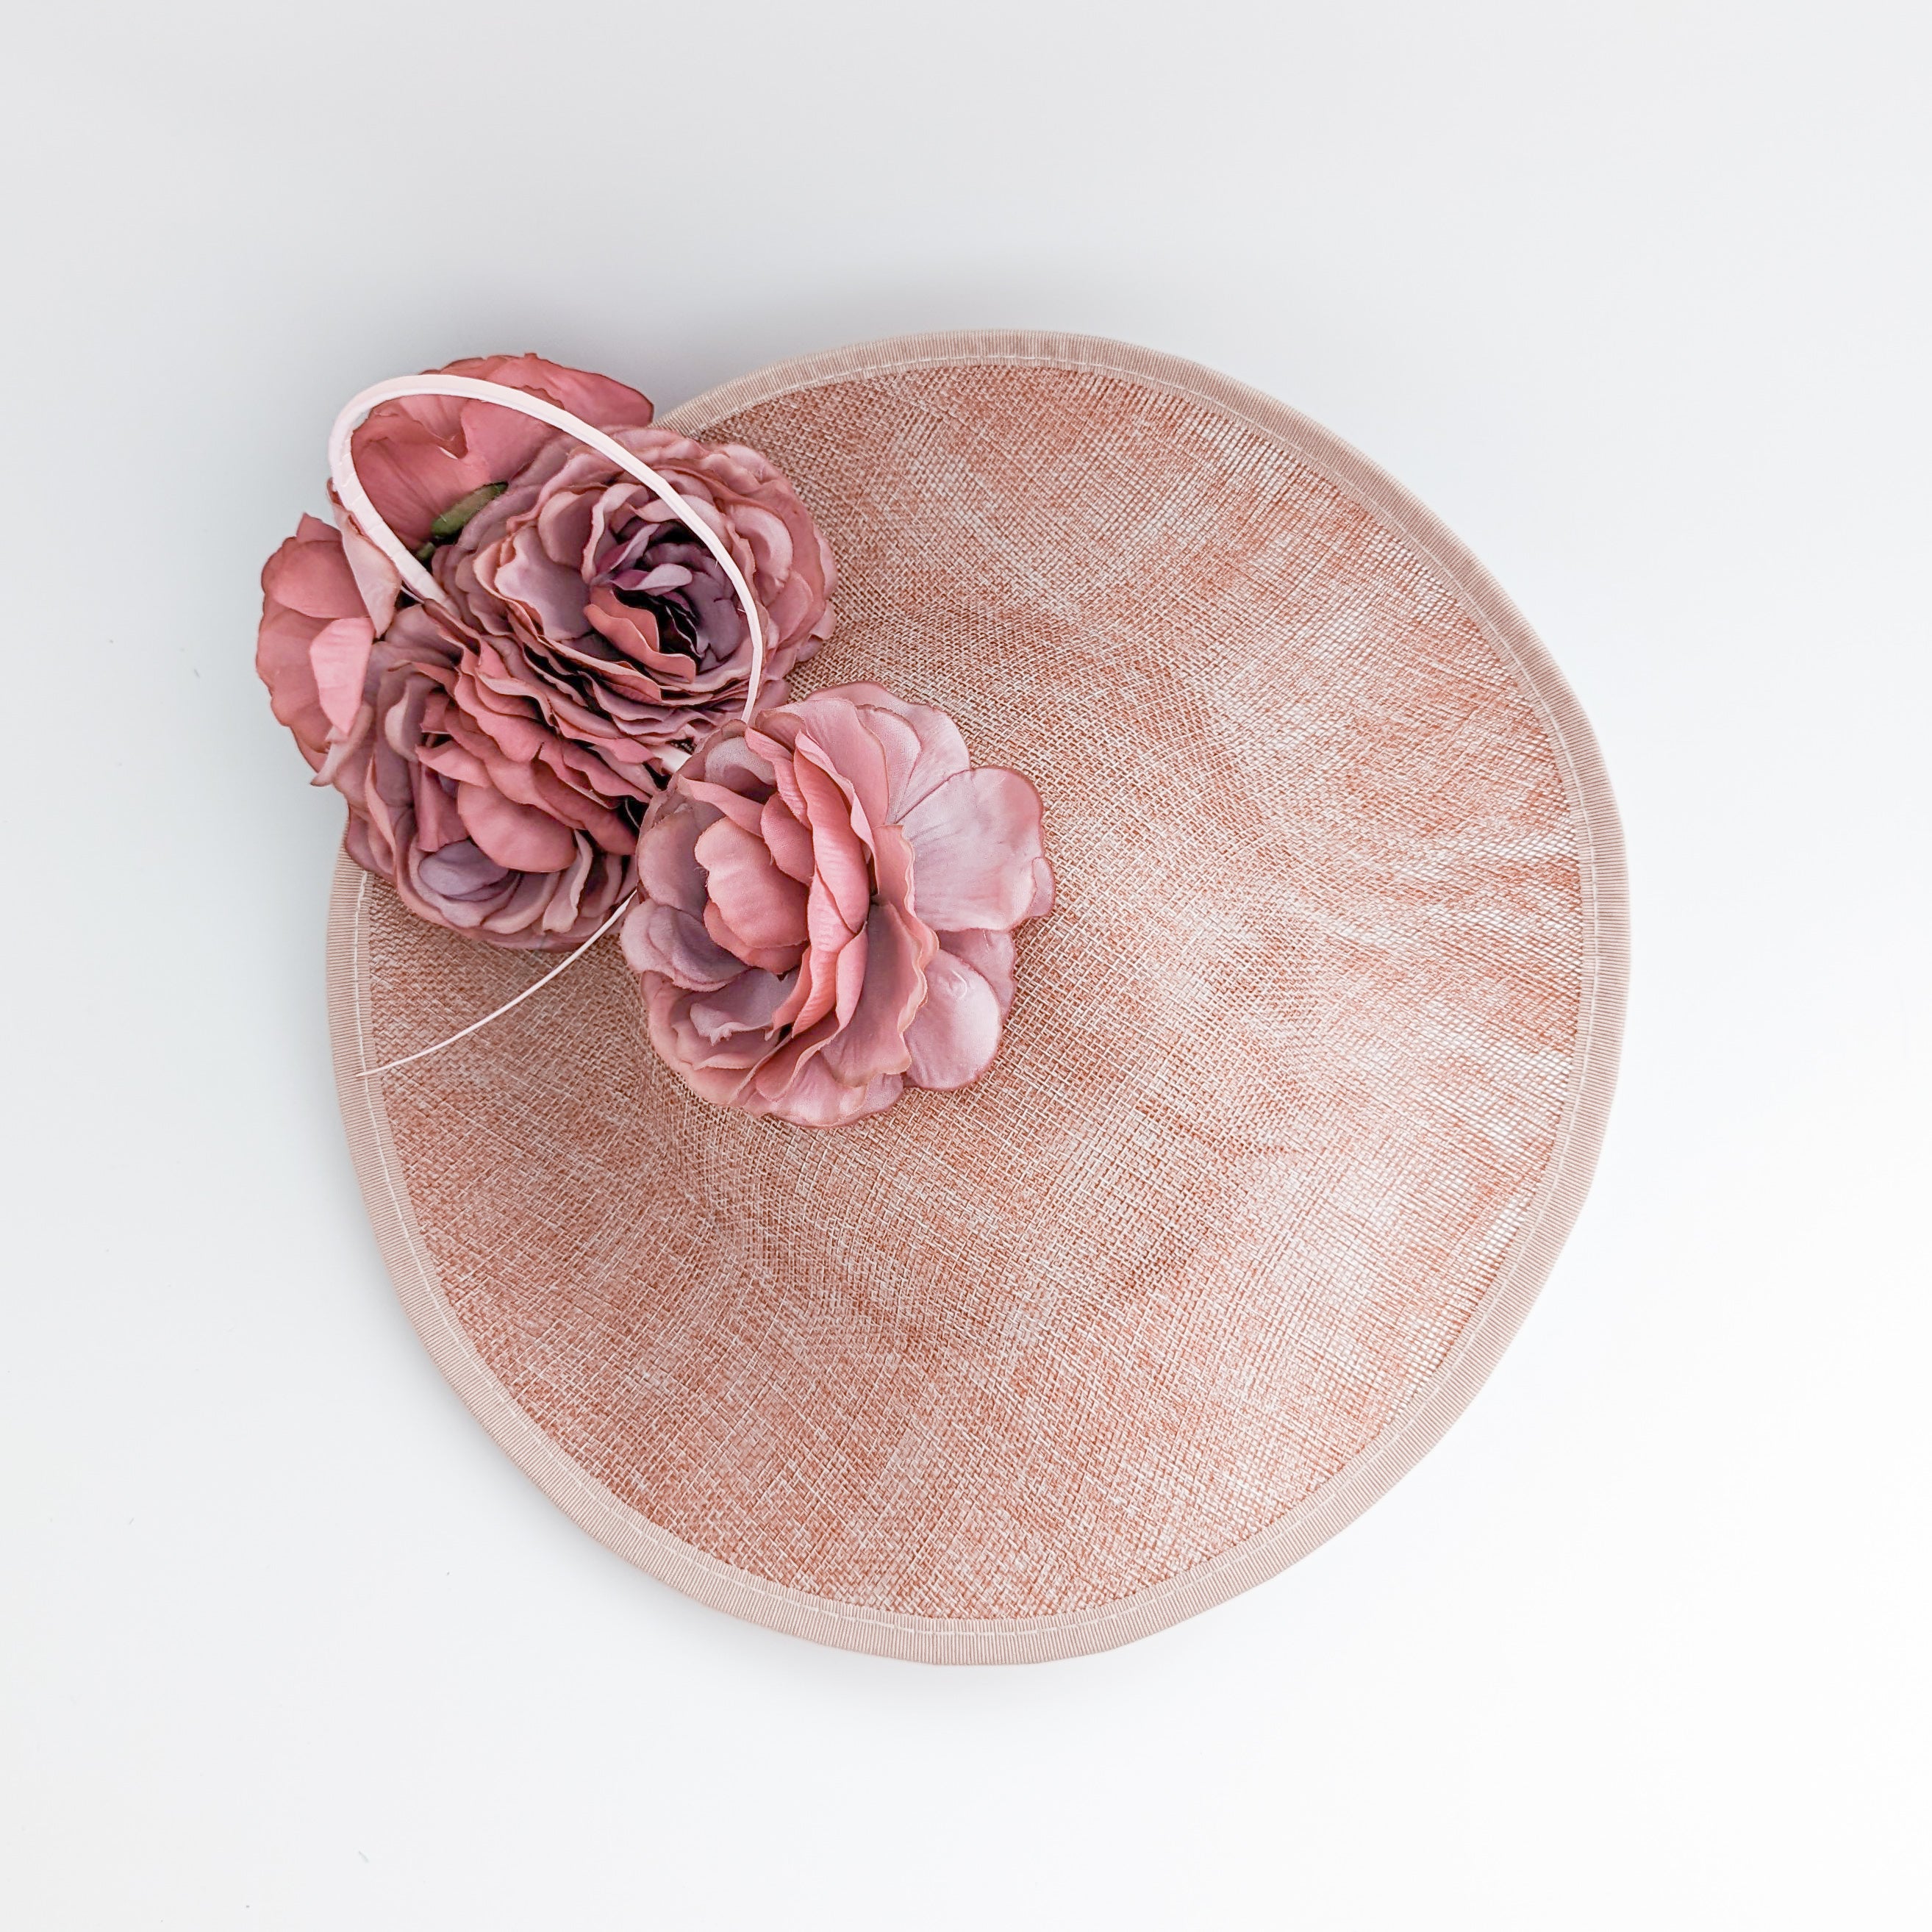 Blush pink large flower saucer disc fascinator hat